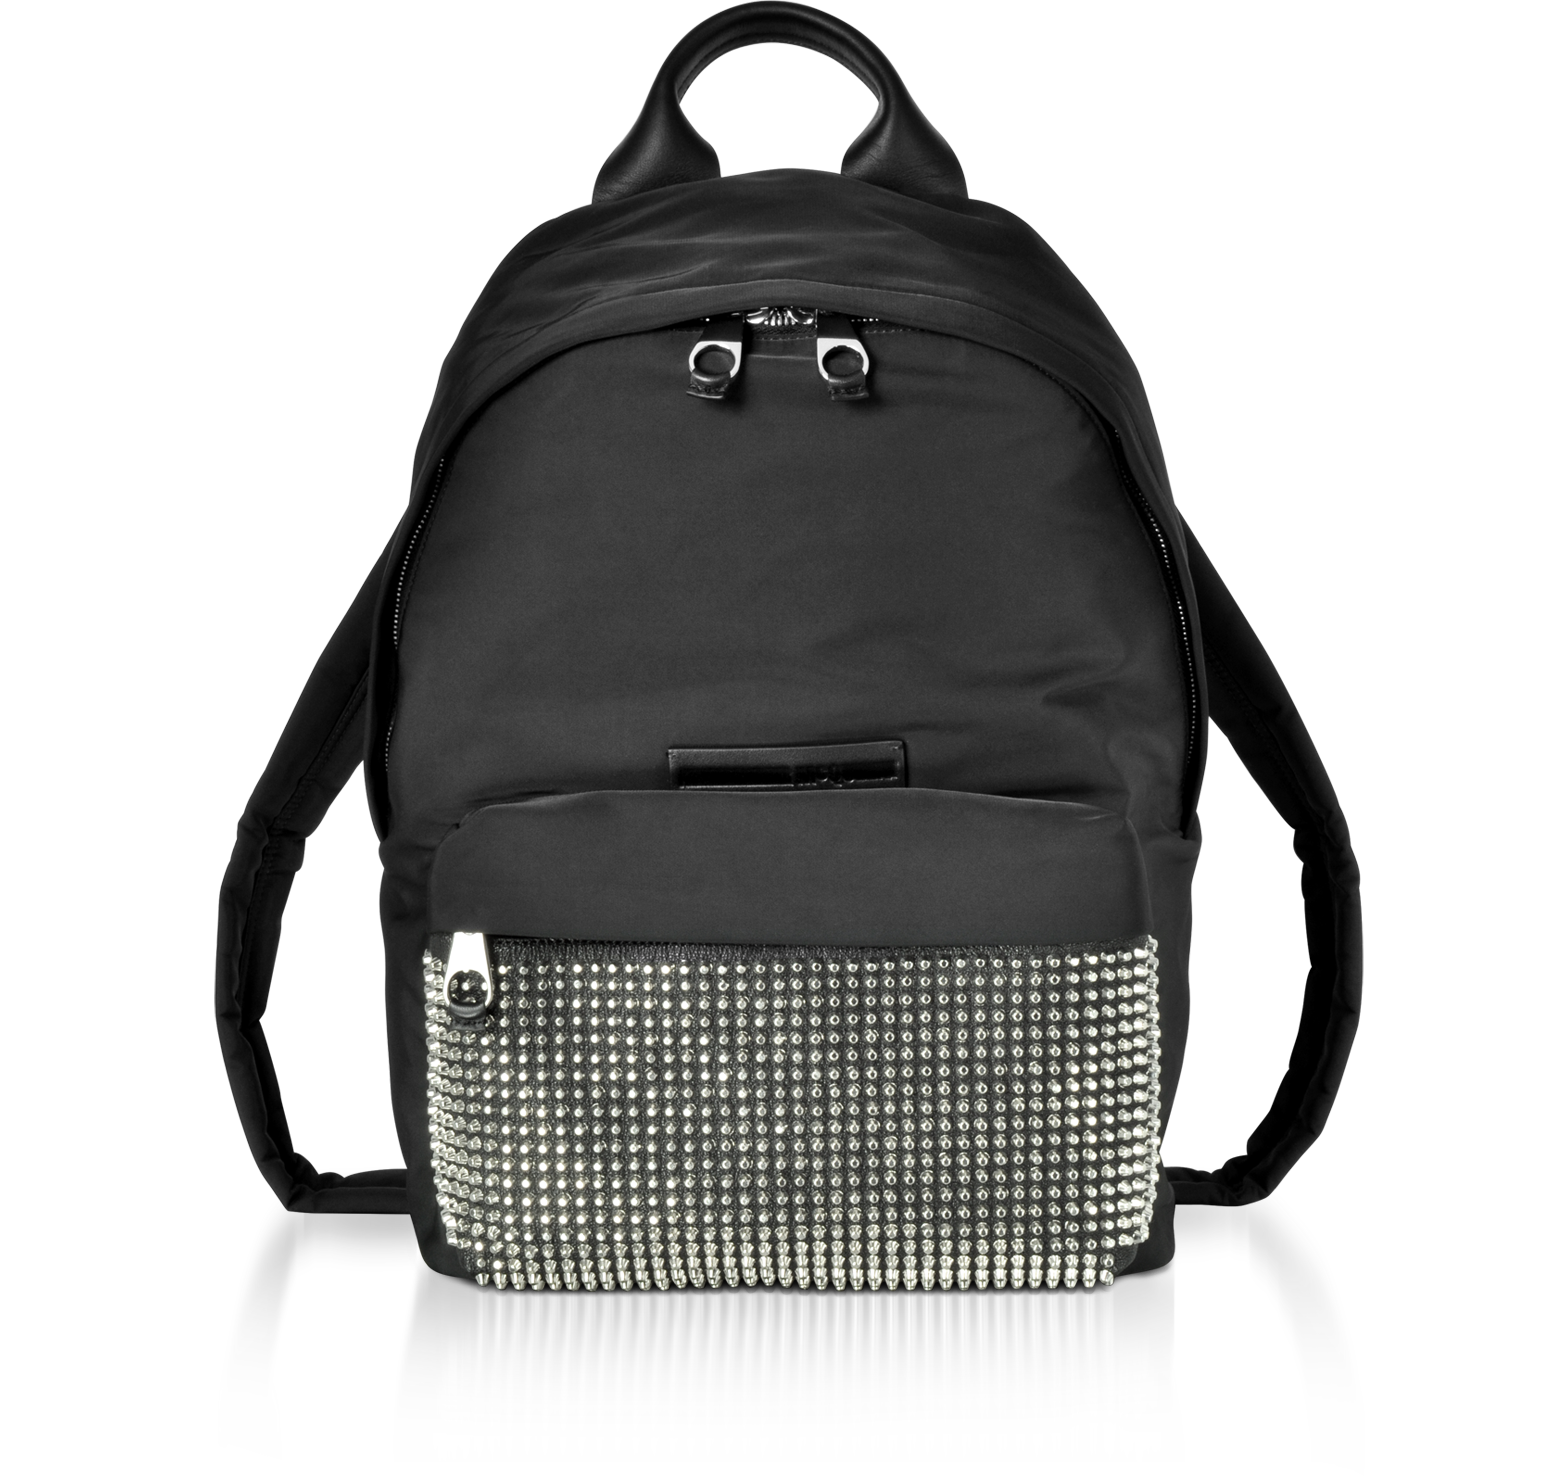 mcq backpack